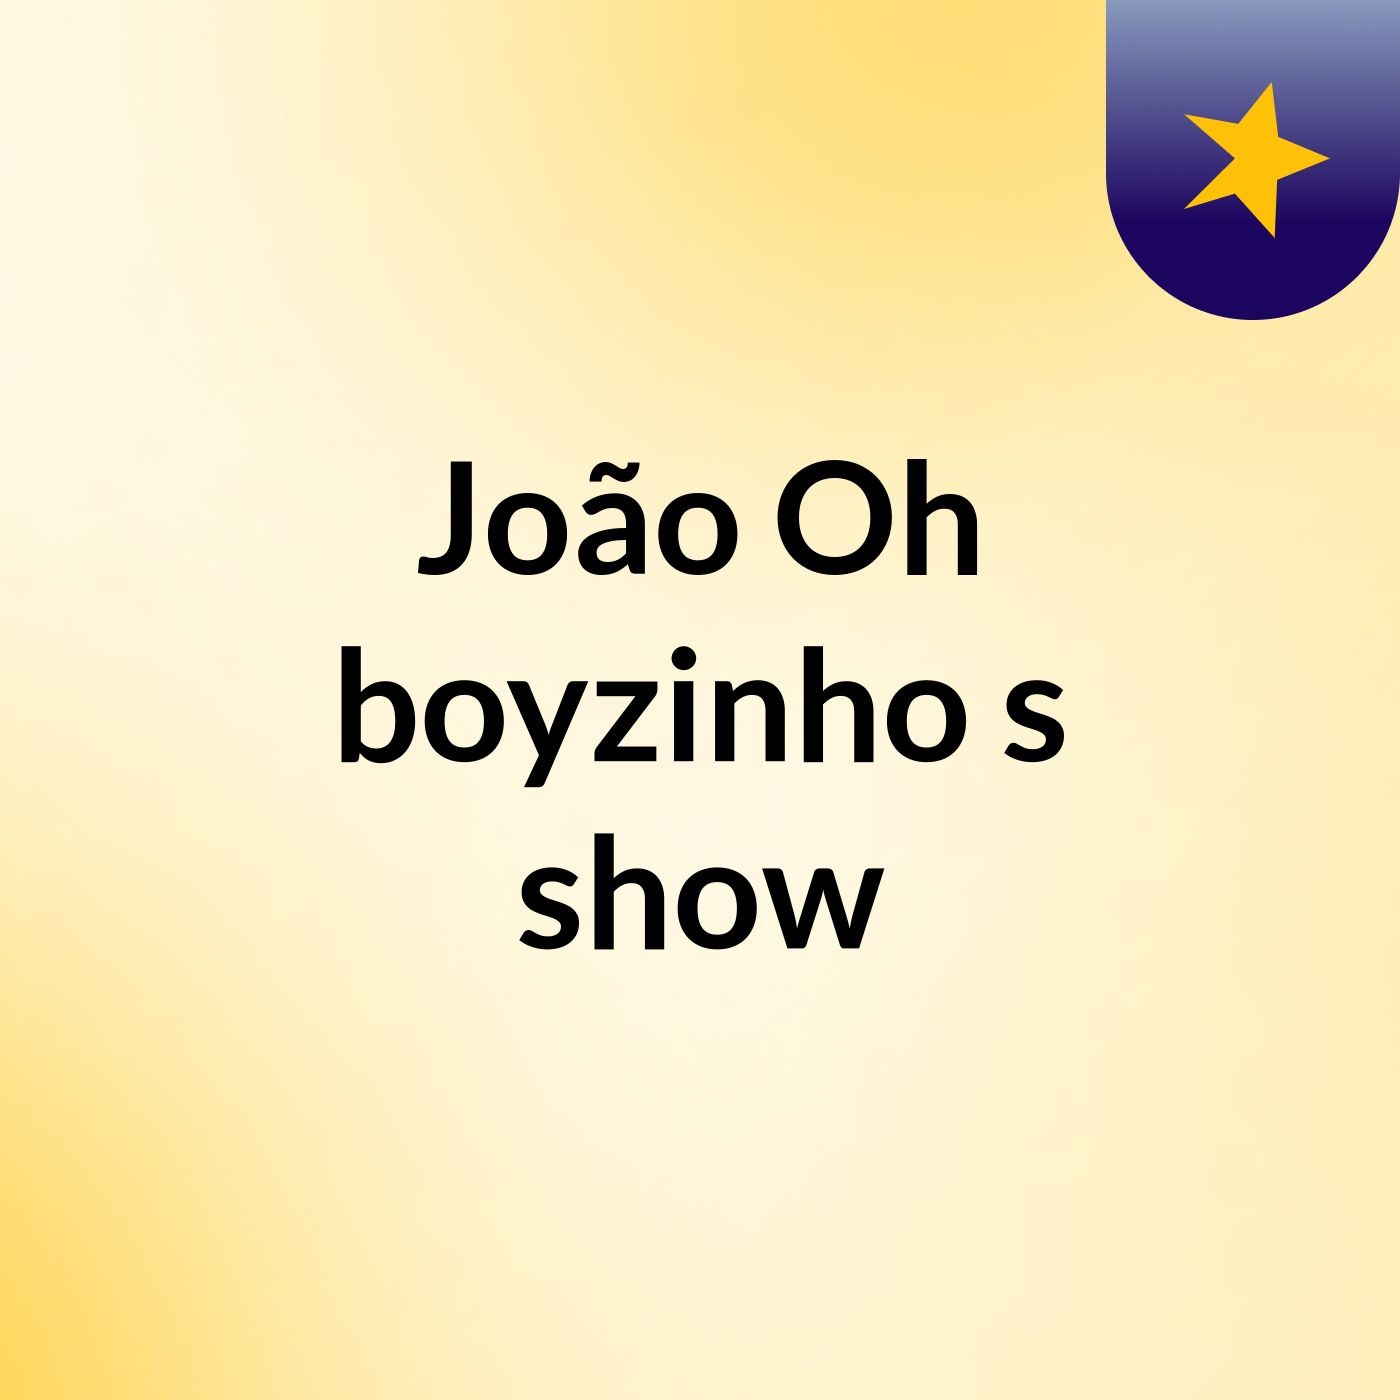 João Oh boyzinho's show